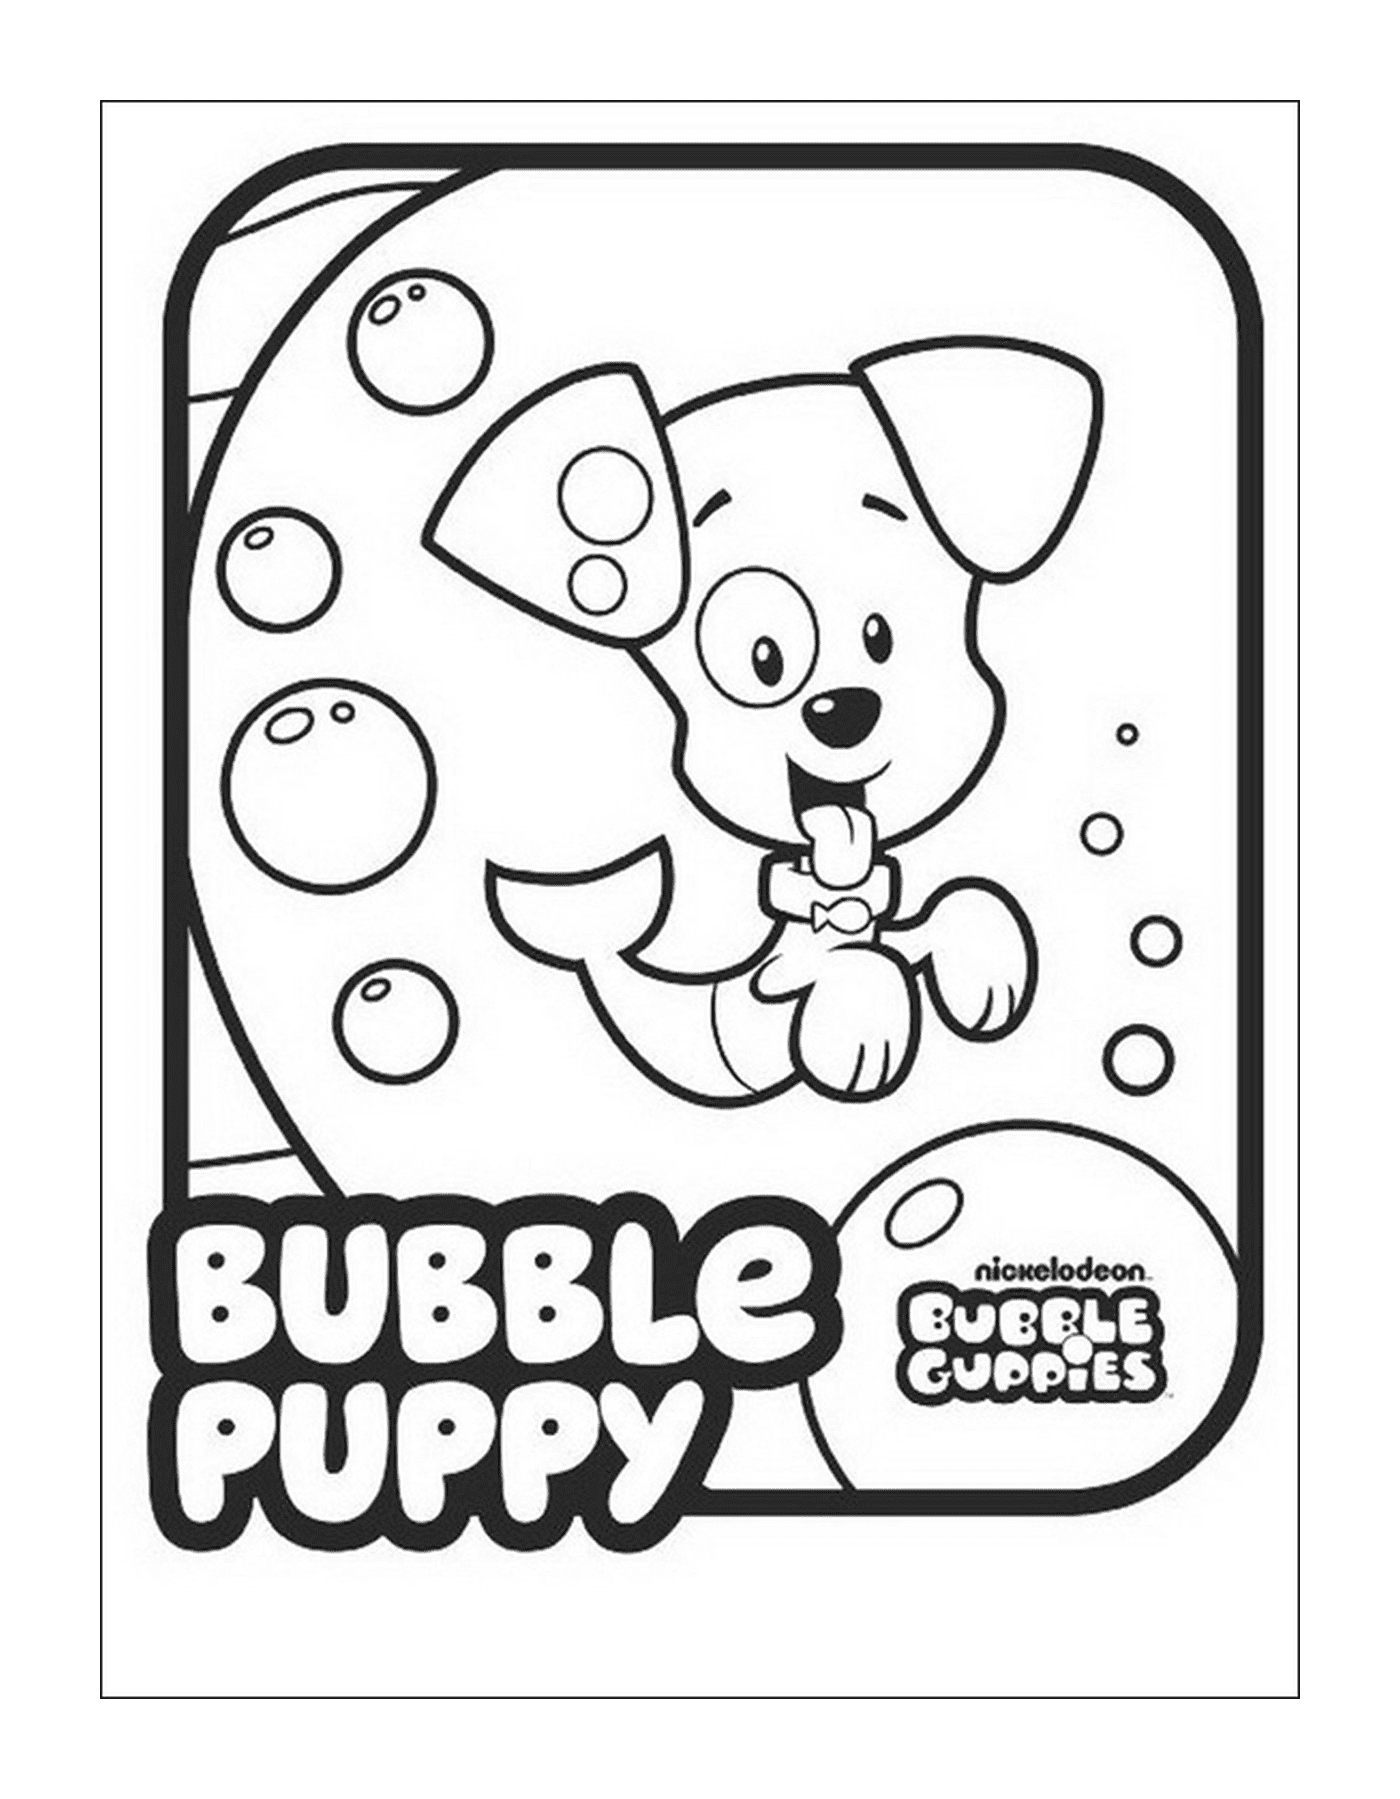  Uma imagem de Bubble Guppies com uma inscrição repetida 